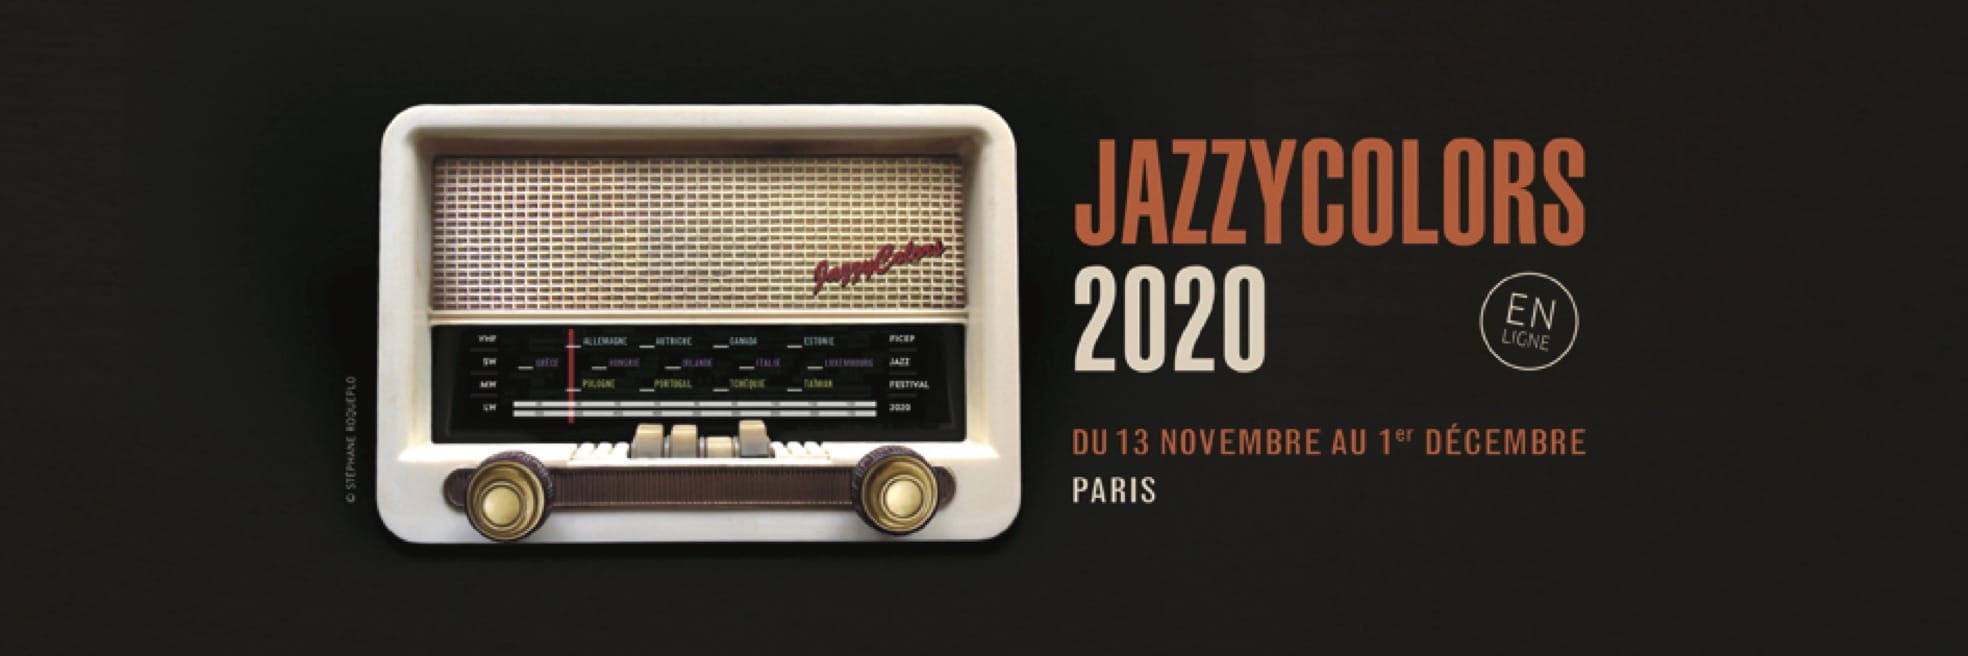 Festival Jazzycolors 2020 en ligne affiche musique